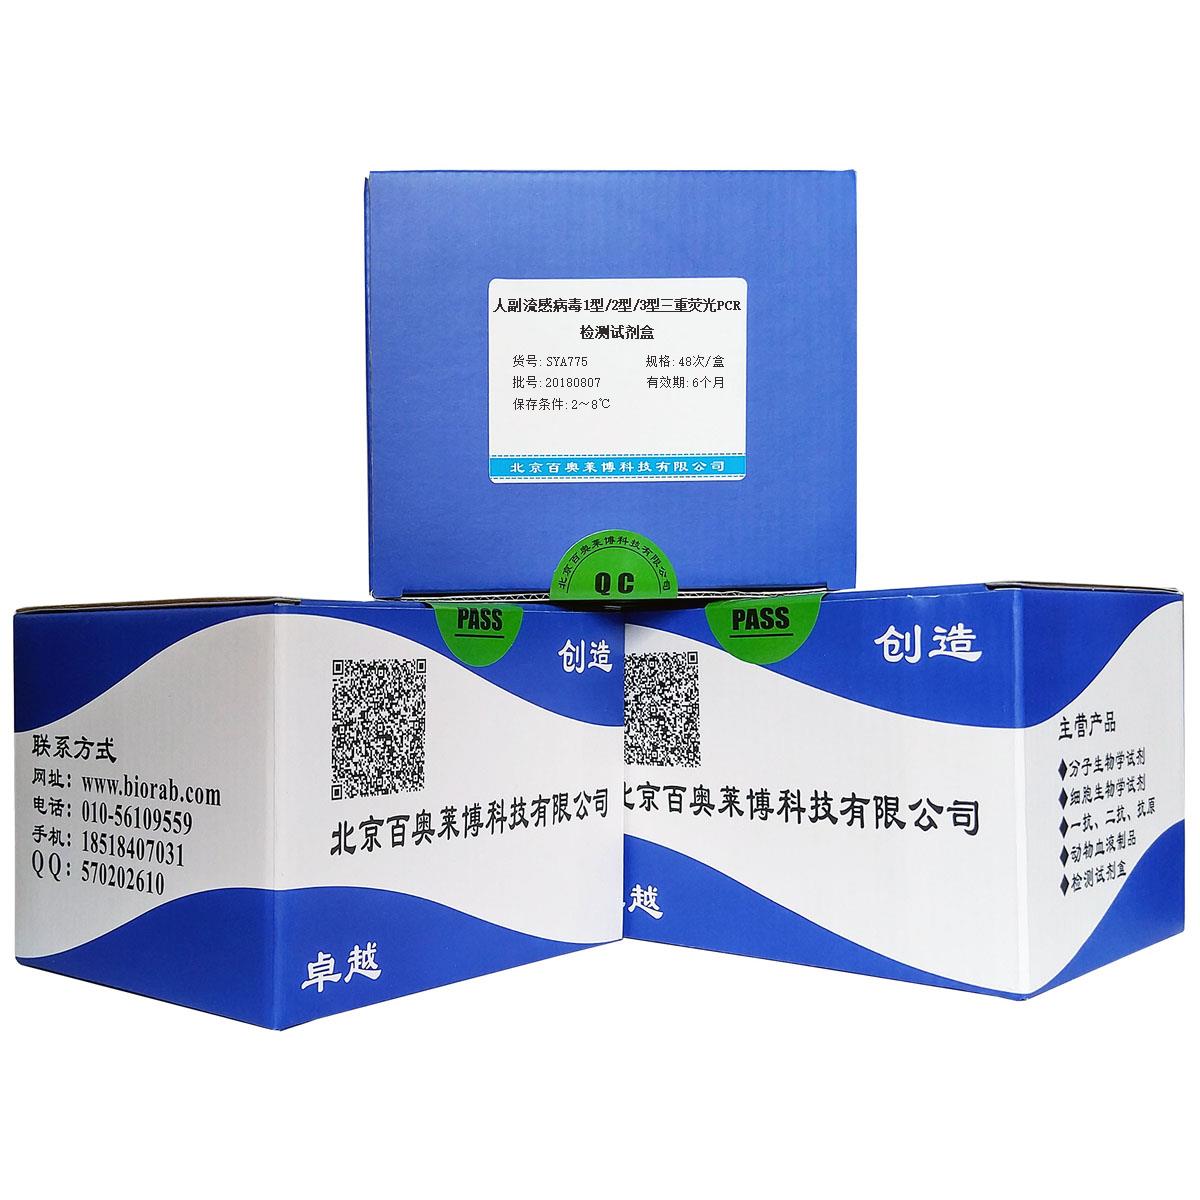 人副流感病毒1型/2型/3型三重荧光PCR检测试剂盒